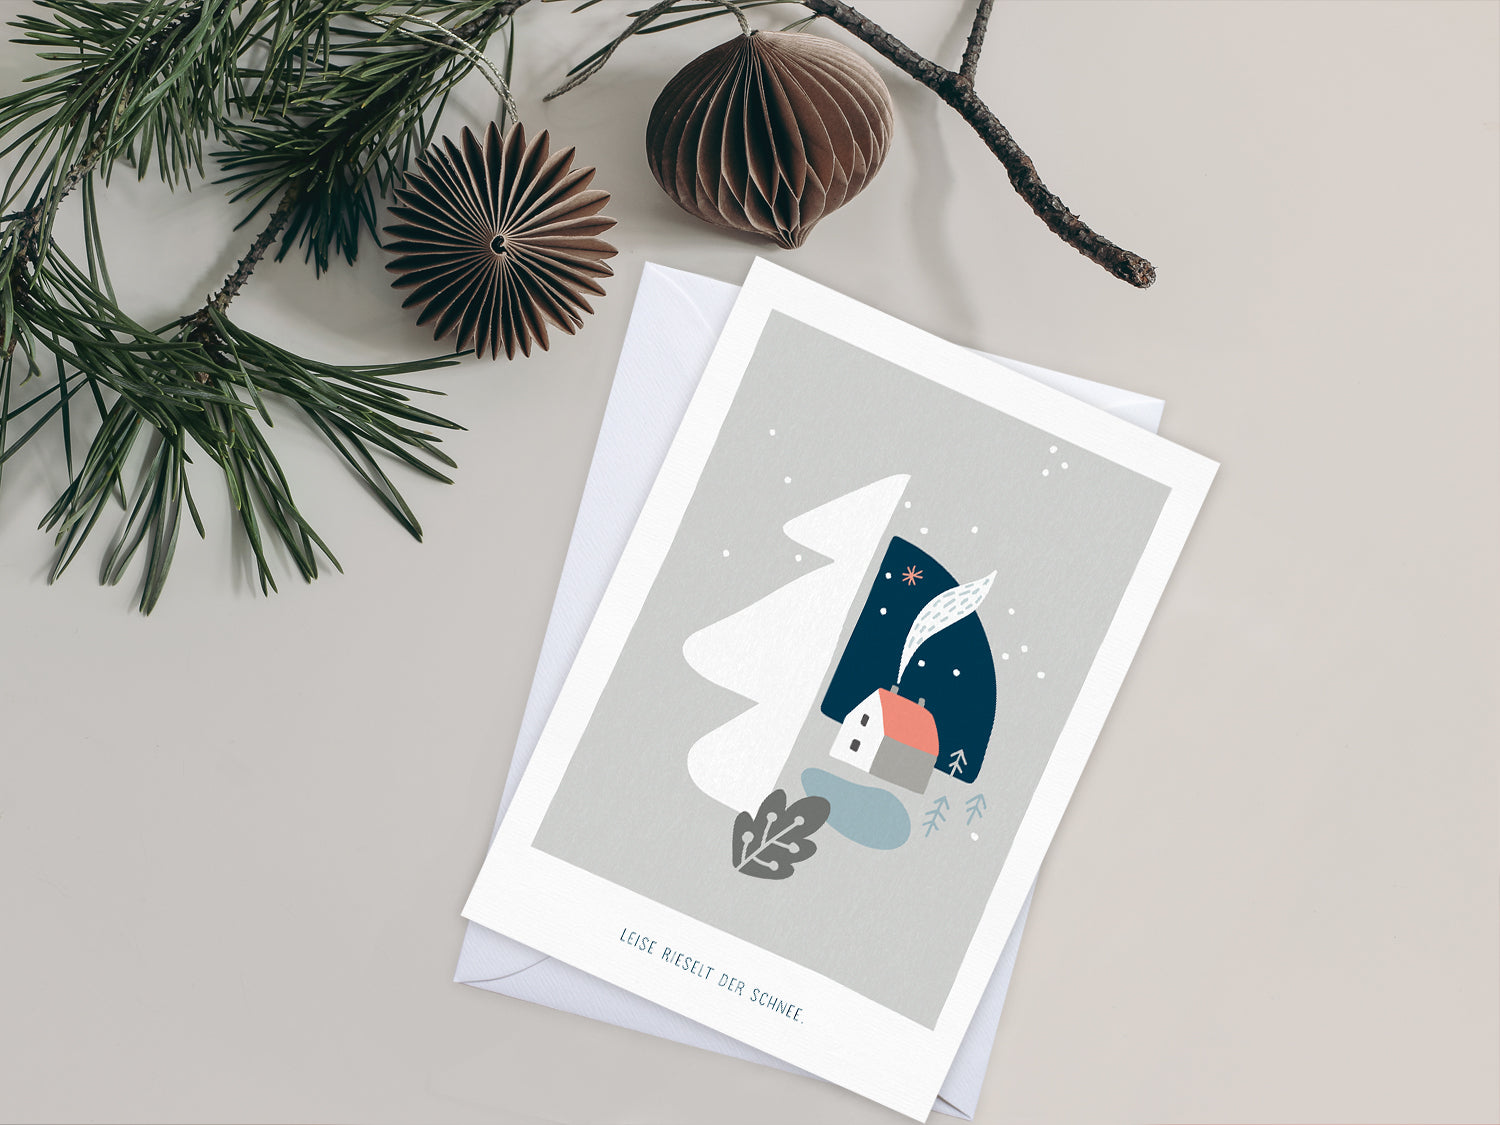 Weihnachtskarte im Scandi Nordic Stil als kleiner Postkartengruß, illustriert mit einer ruhigen, verschneiten Winterlandschaft und dem Spruch »Leise rieselt der Schnee«, in sanften Pastellfarben.  Durch die gedeckten Pastelltöne und minimalistischem Nordic Design zaubert diese Weihnachtskarte eine gemütliche Atmosphäre unter den Tannenbaum.